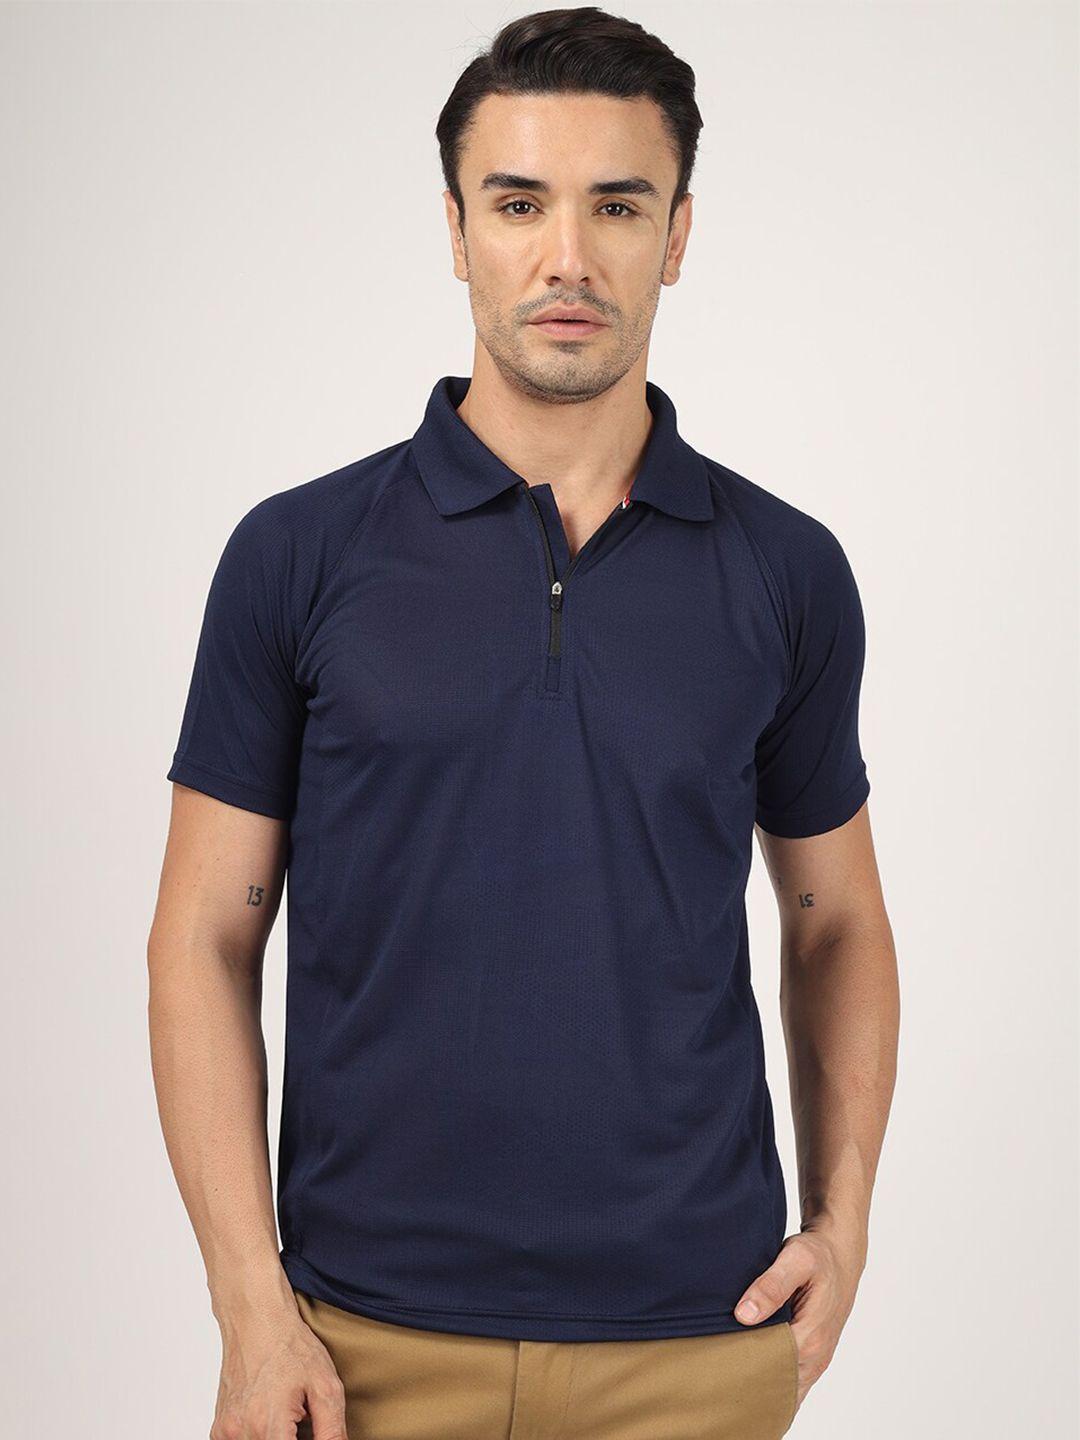 greylongg men navy blue polo collar pockets t-shirt